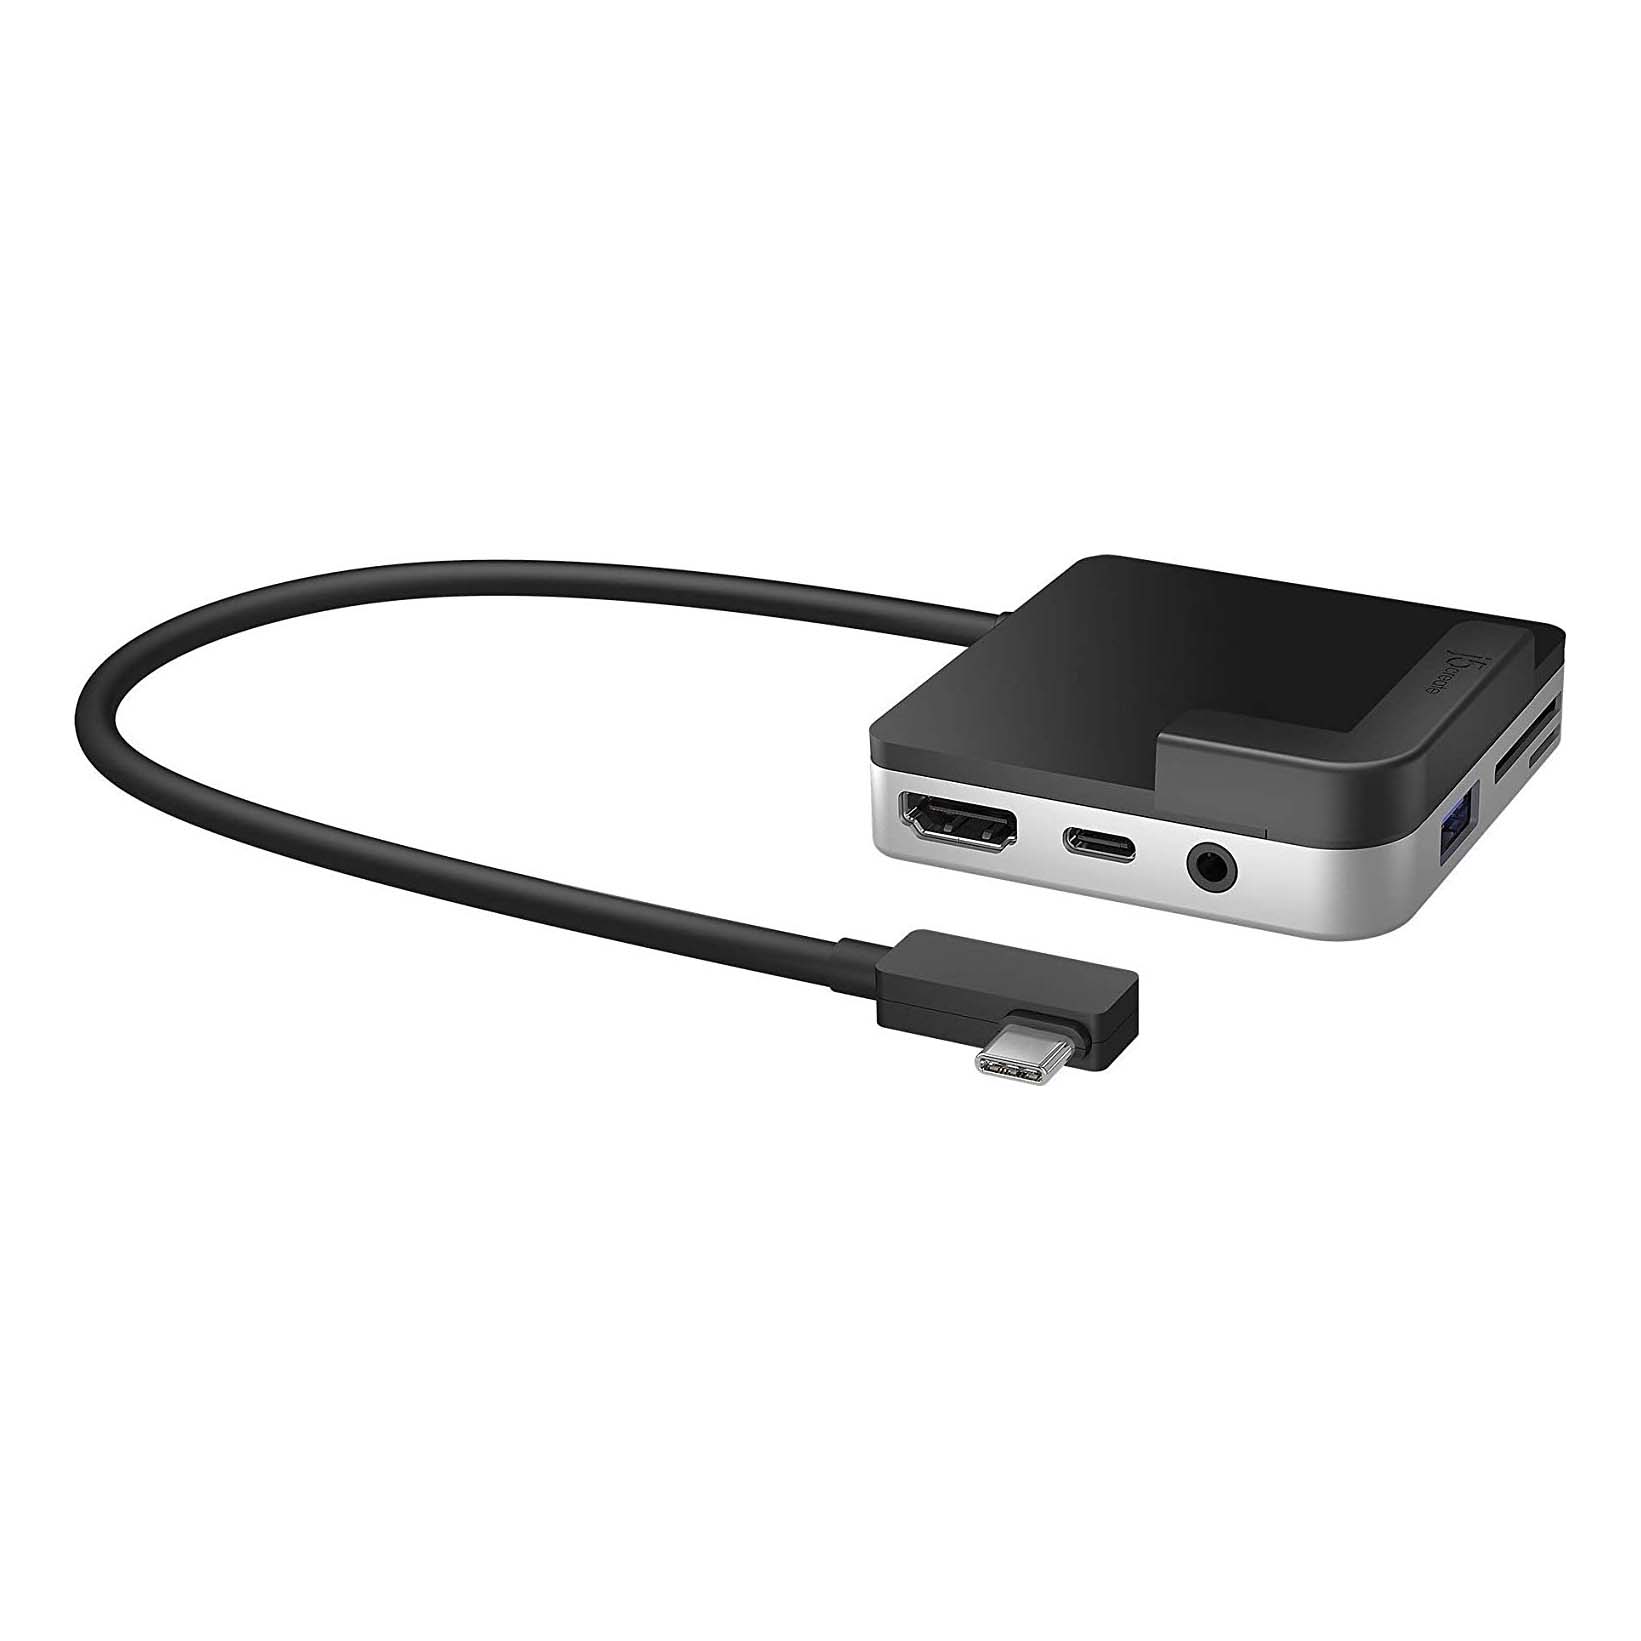 Док-станция j5create Travel Dock USB-C для iPad Pro, черный/серебро док станция j5create ultradrive mini dock для microsoft surface pro 7 черный